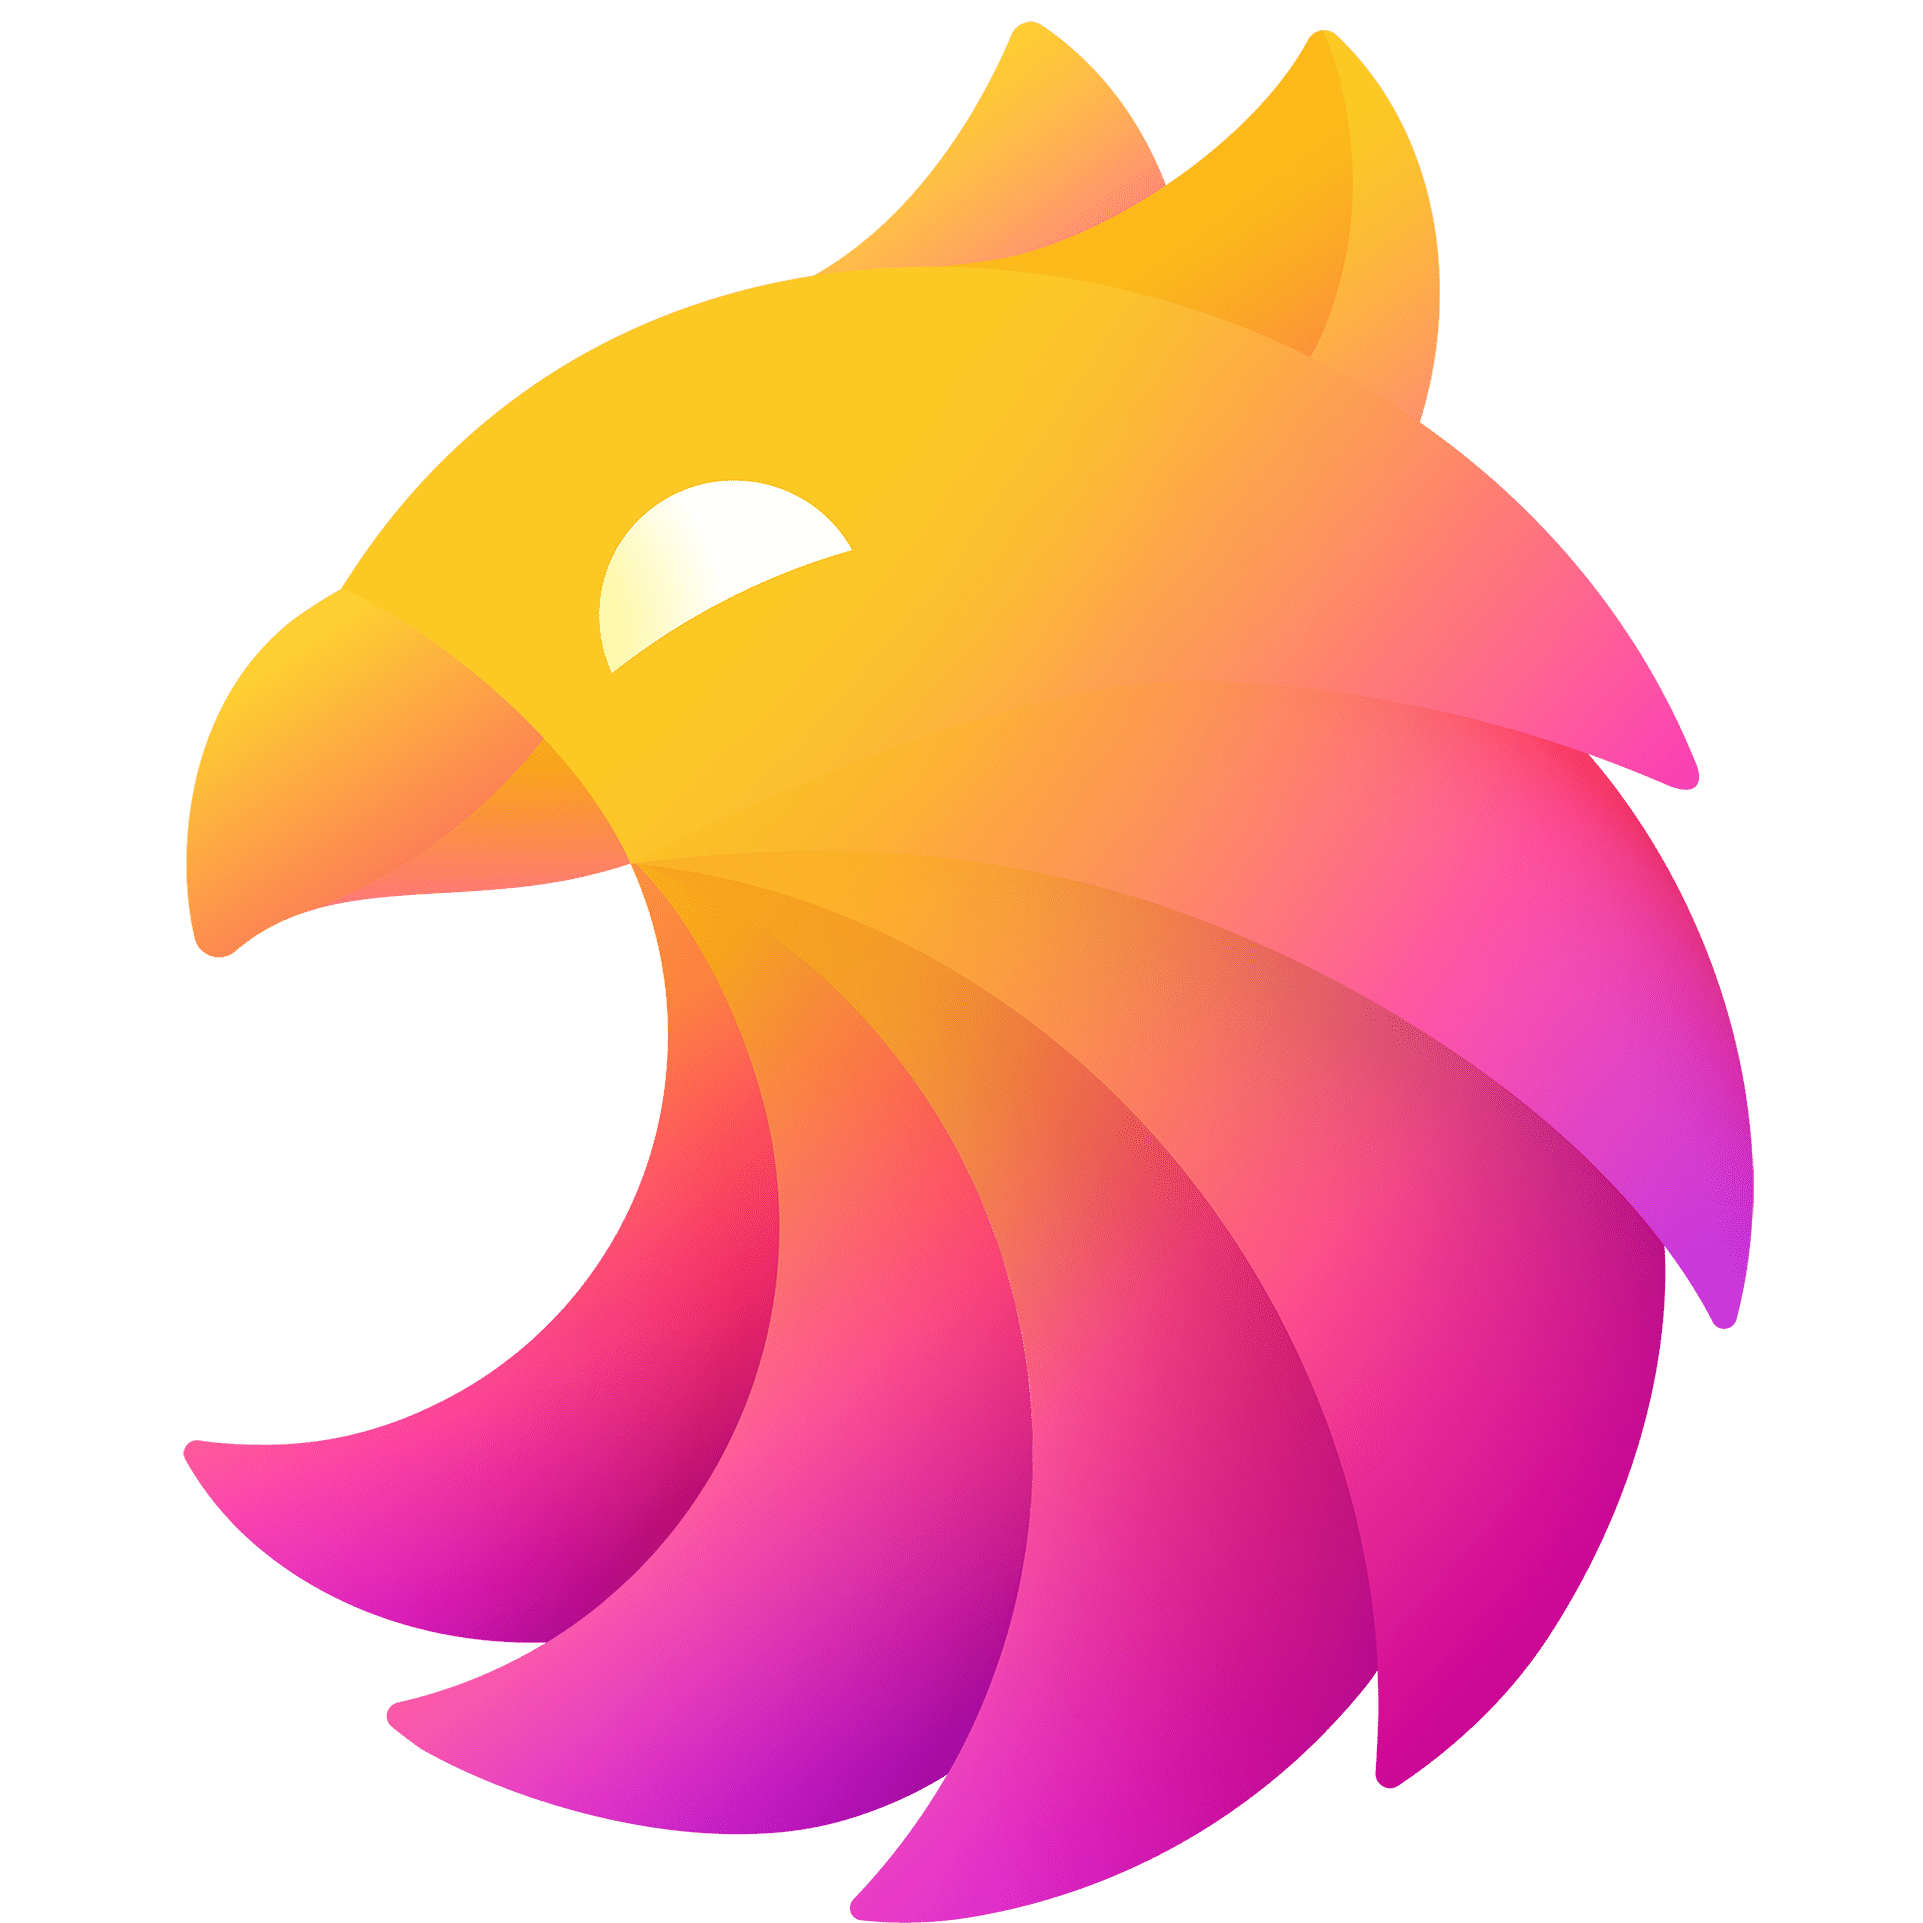 Griffin’s logo